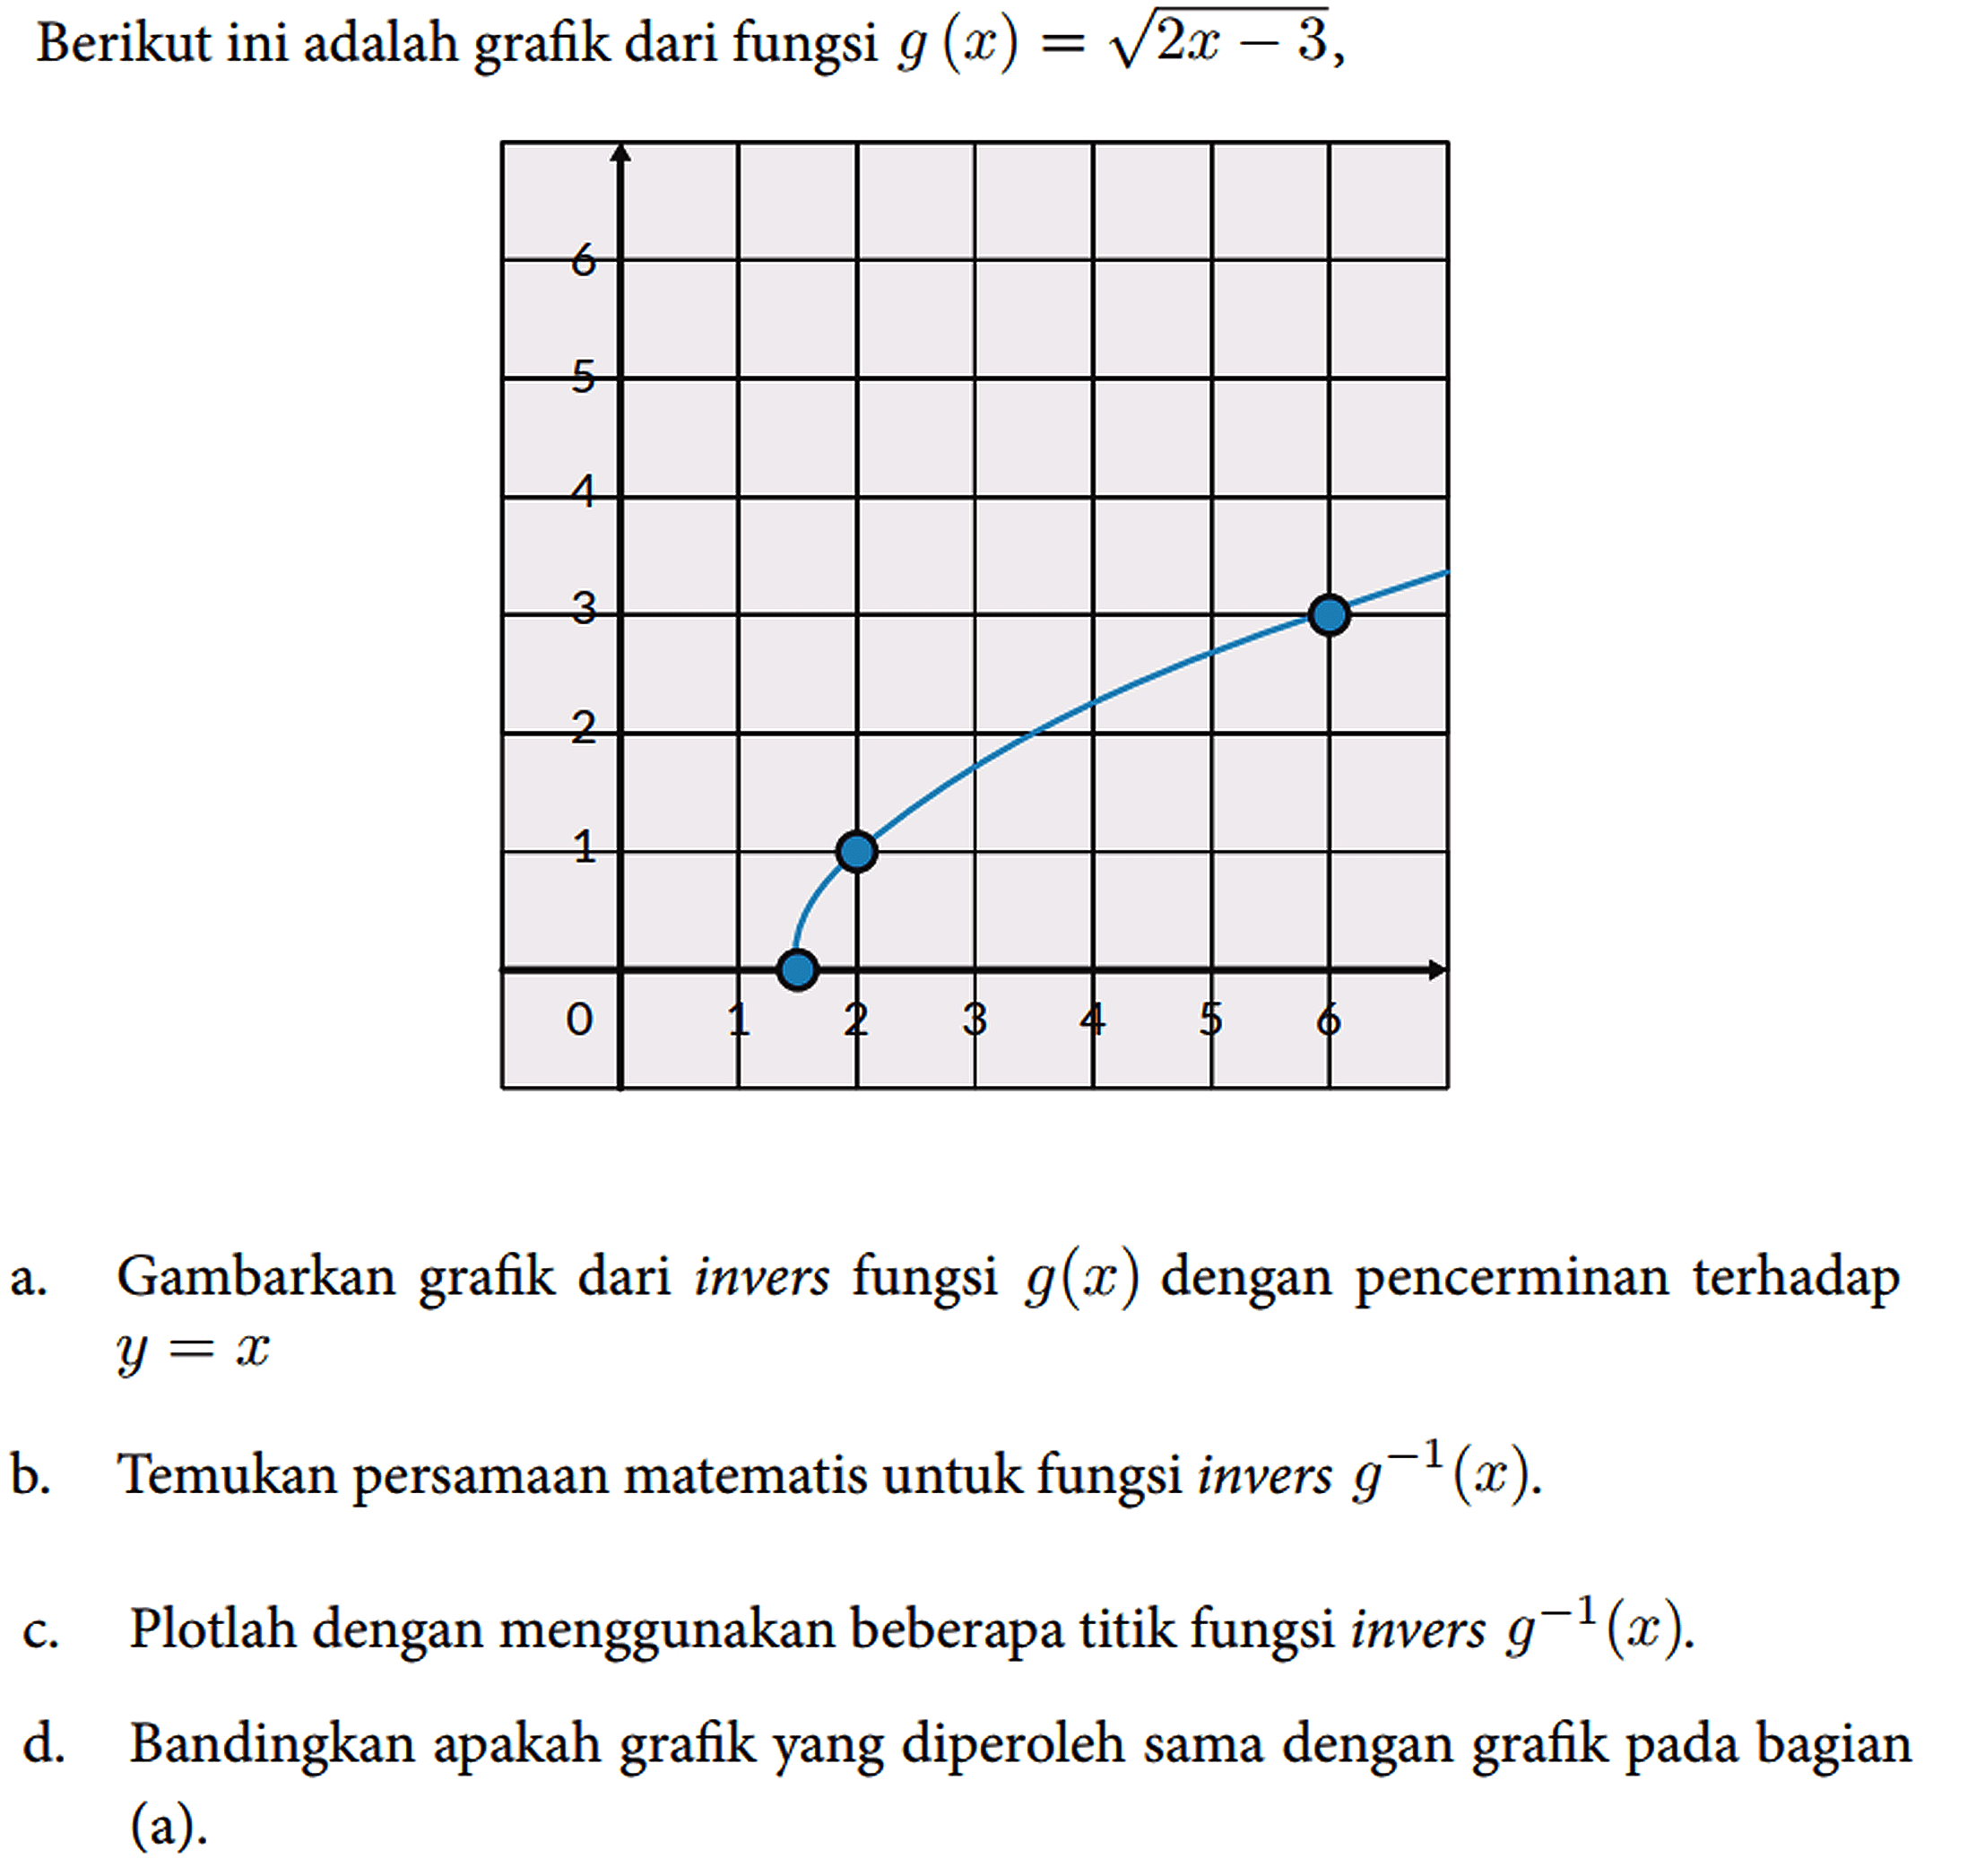 Berikut ini adalah grafik dari fungsi g(x)=akar(2 x-3) ,
 a. Gambarkan grafik dari invers fungsi g(x) dengan pencerminan terhadap y=x 
 b. Temukan persamaan matematis untuk fungsi invers g^(-1)(x) .
 c. Plotlah dengan menggunakan beberapa titik fungsi invers g^(-1)(x) .
 d. Bandingkan apakah grafik yang diperoleh sama dengan grafik pada bagian (a).